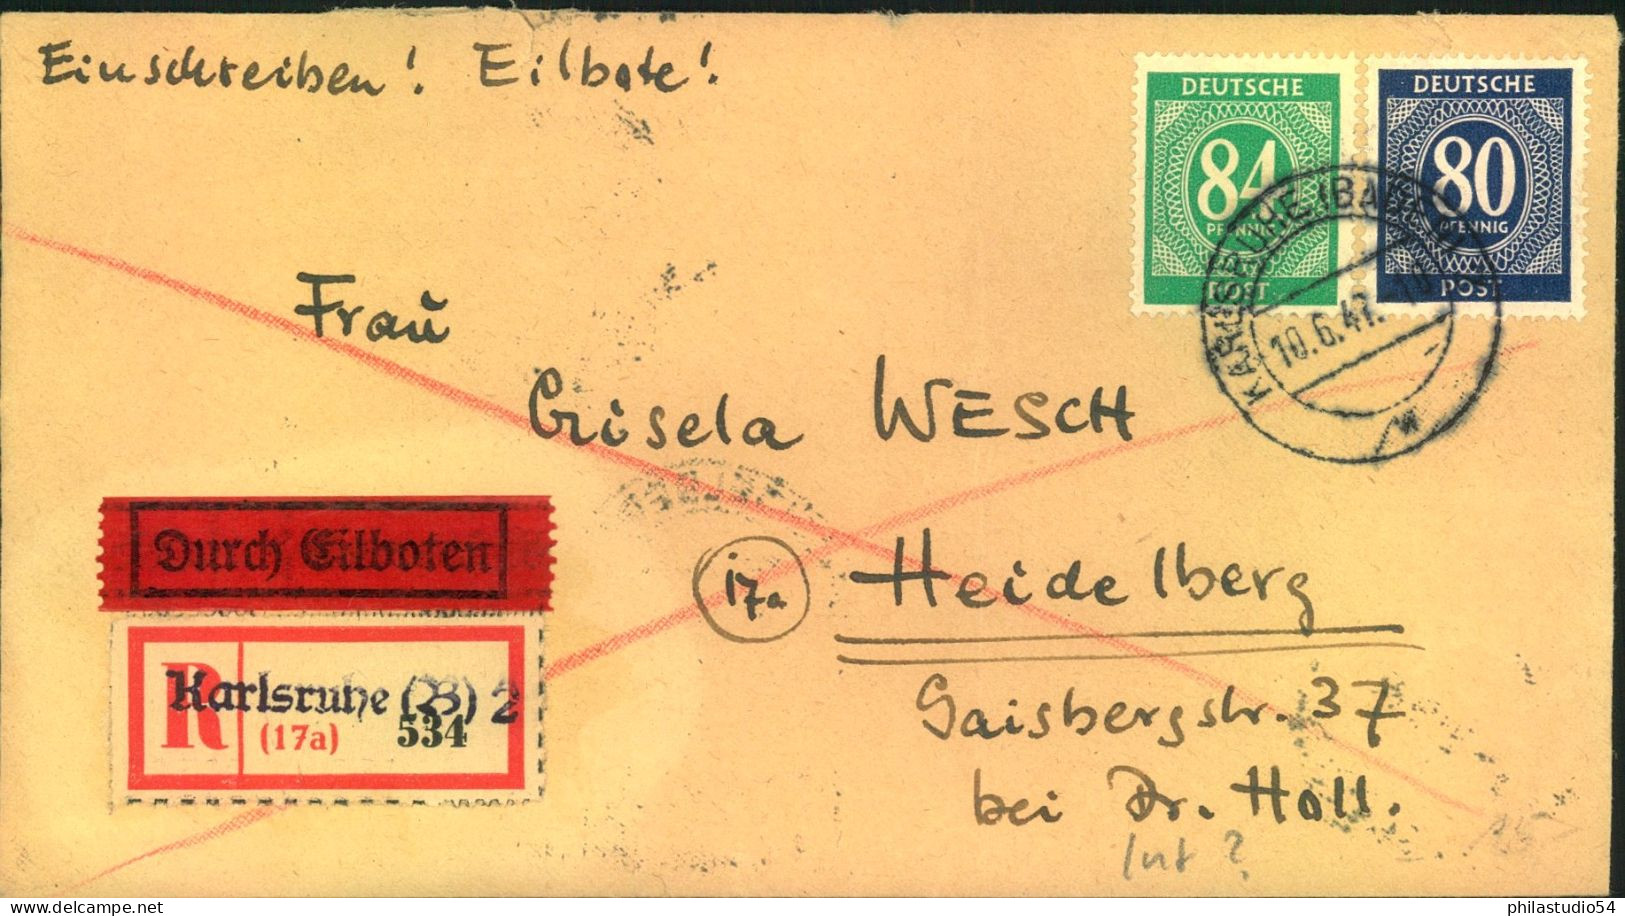 1947, Einschreiben / Eilboten Aus KARLSRIHE Mit Not-R-ettel Nit 80 Und 84 Pfg. Ziffer - Storia Postale